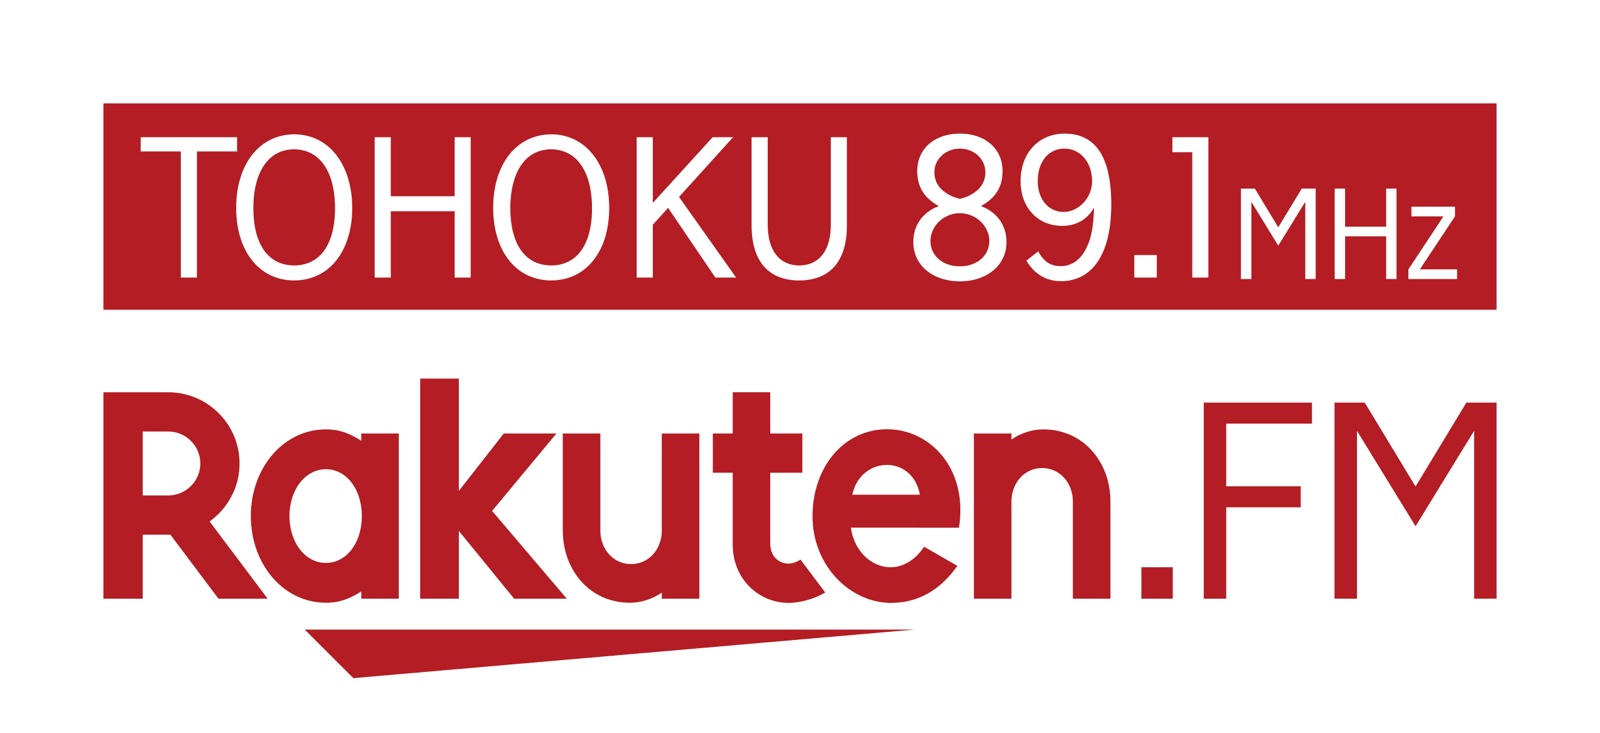 Rakuten.FM TOHOKUラジオ出演予定！